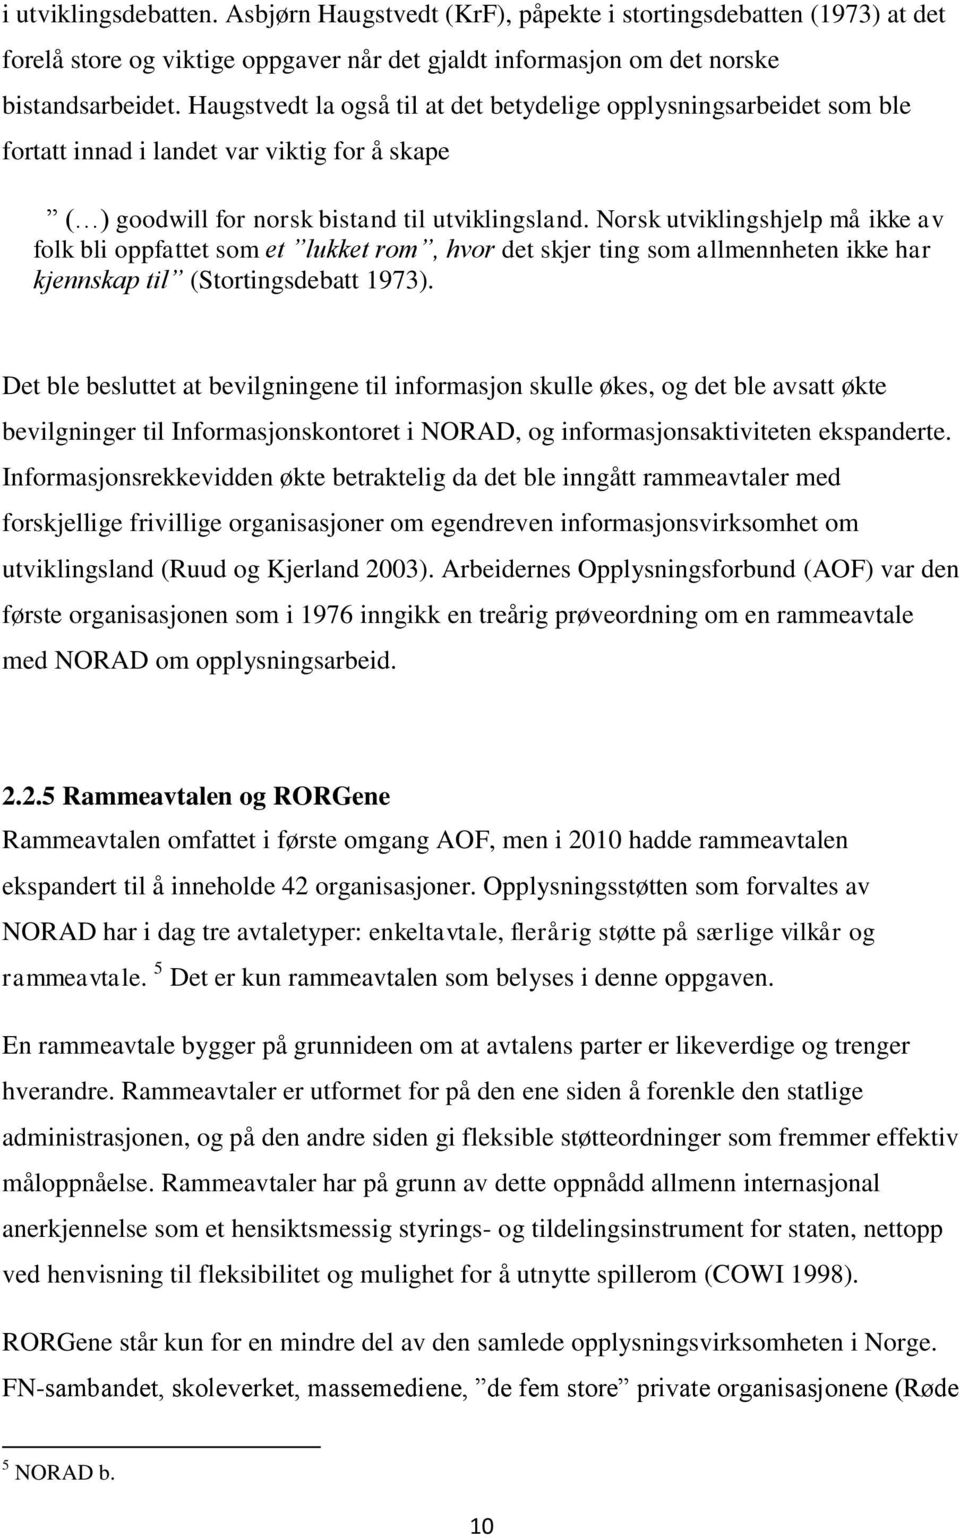 Norsk utviklingshjelp må ikke av folk bli oppfattet som et lukket rom, hvor det skjer ting som allmennheten ikke har kjennskap til (Stortingsdebatt 1973).